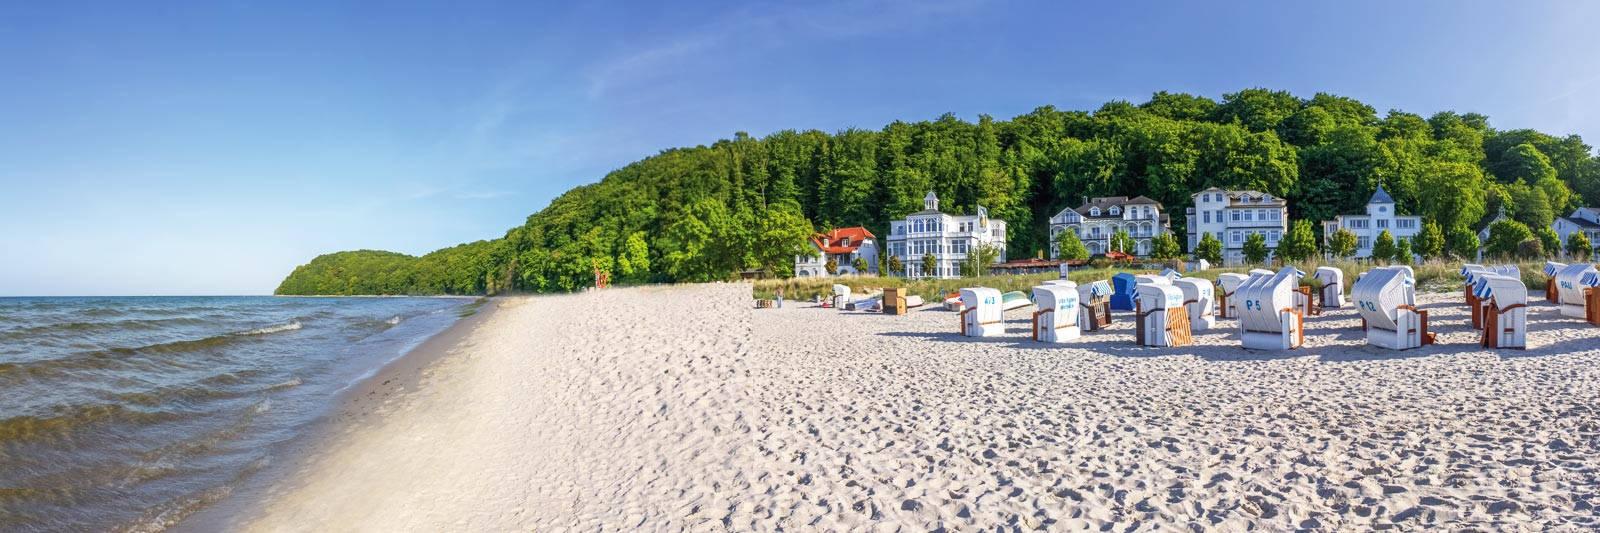 38 Ferienwohnungen und Ferienhäuser in Fürstenwerder - tourist-online.de